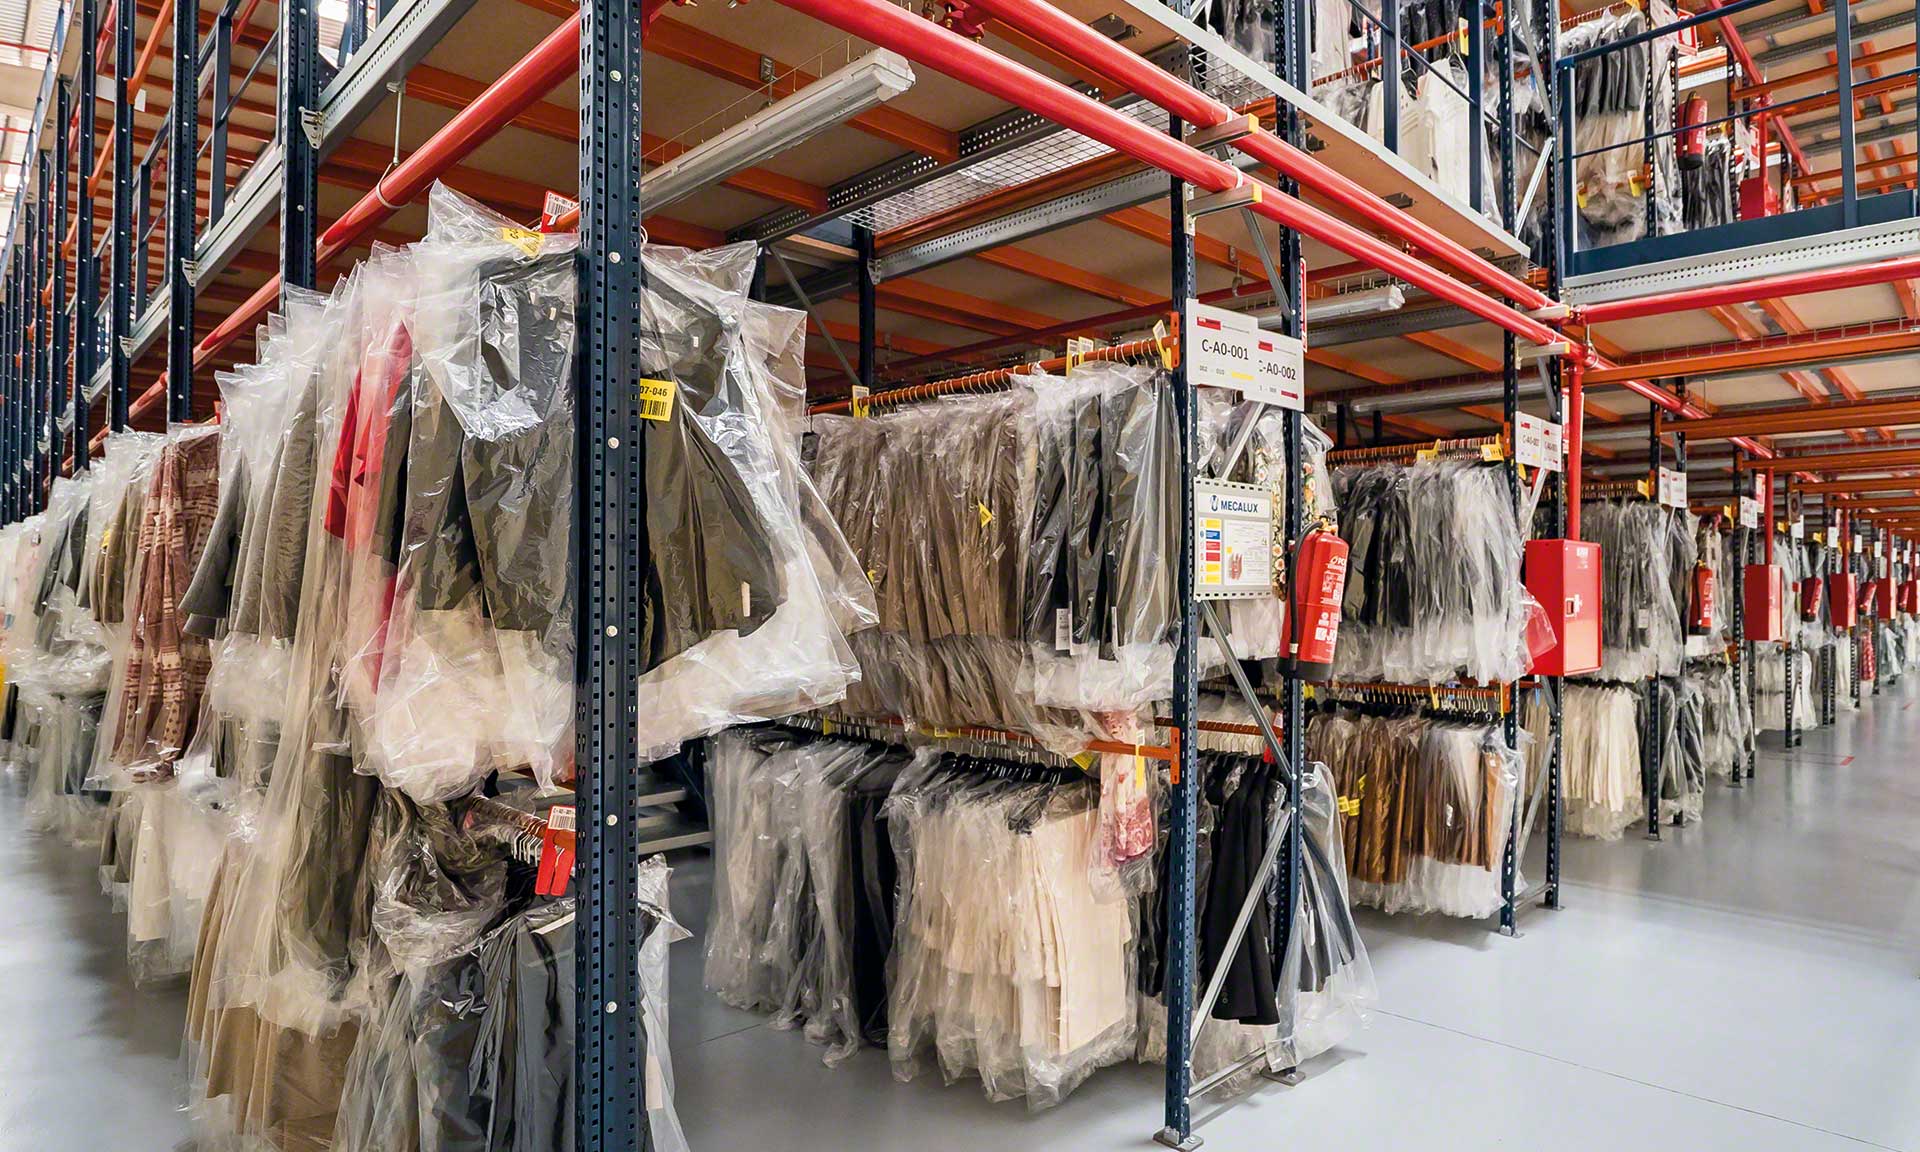 As estantes para estoque de roupa são sistemas de armazenagem específicos para guardar peças de roupa de forma vertical